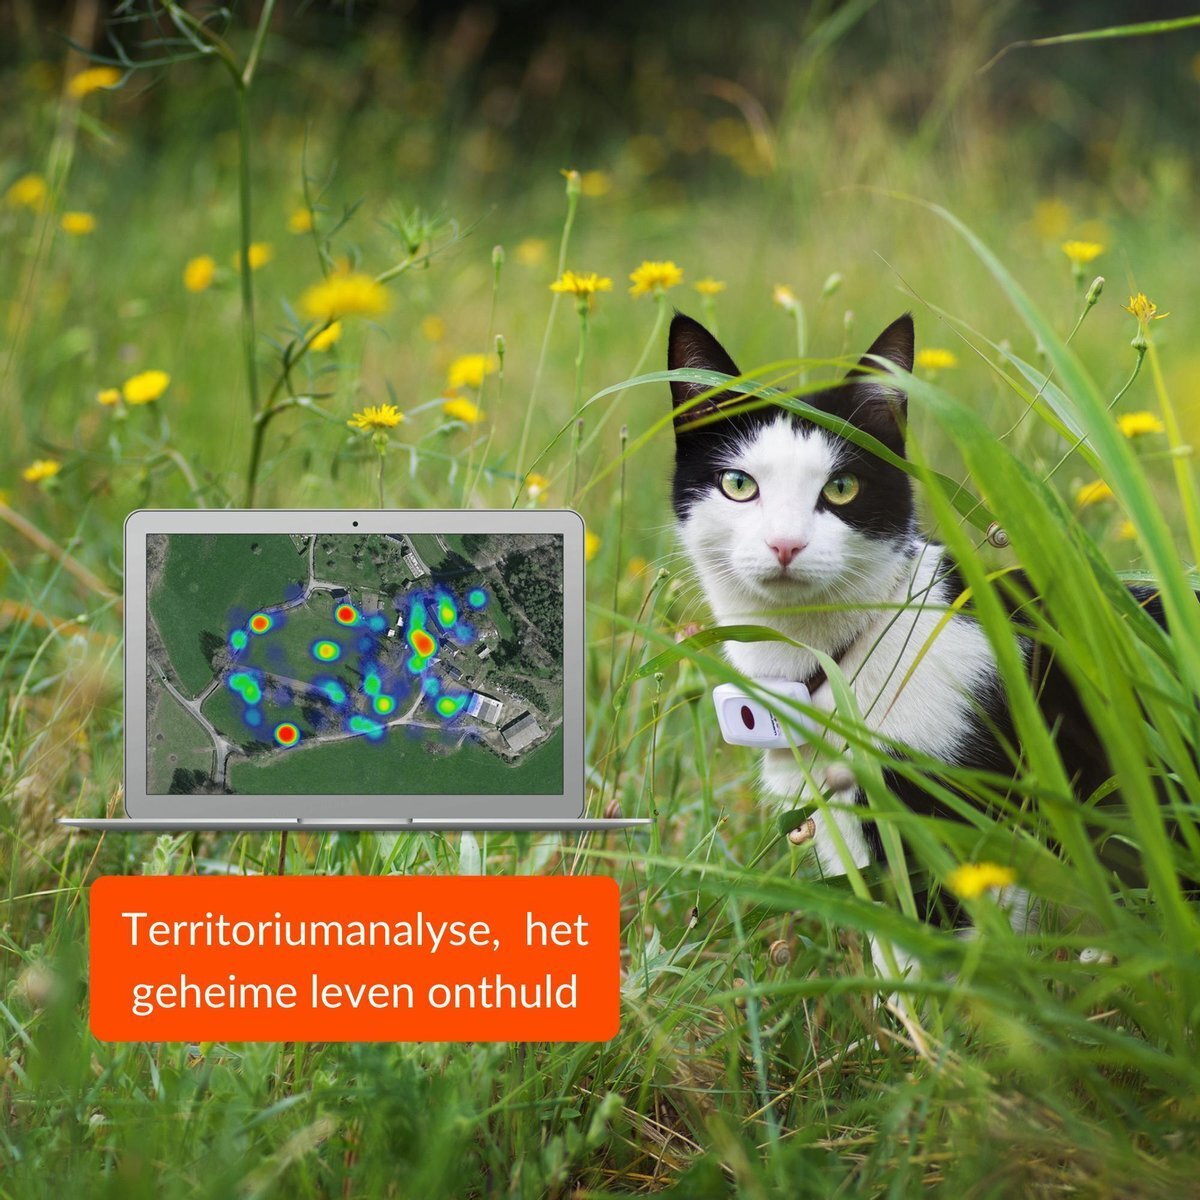 Weenect CATS² GPS Tracker voor katten